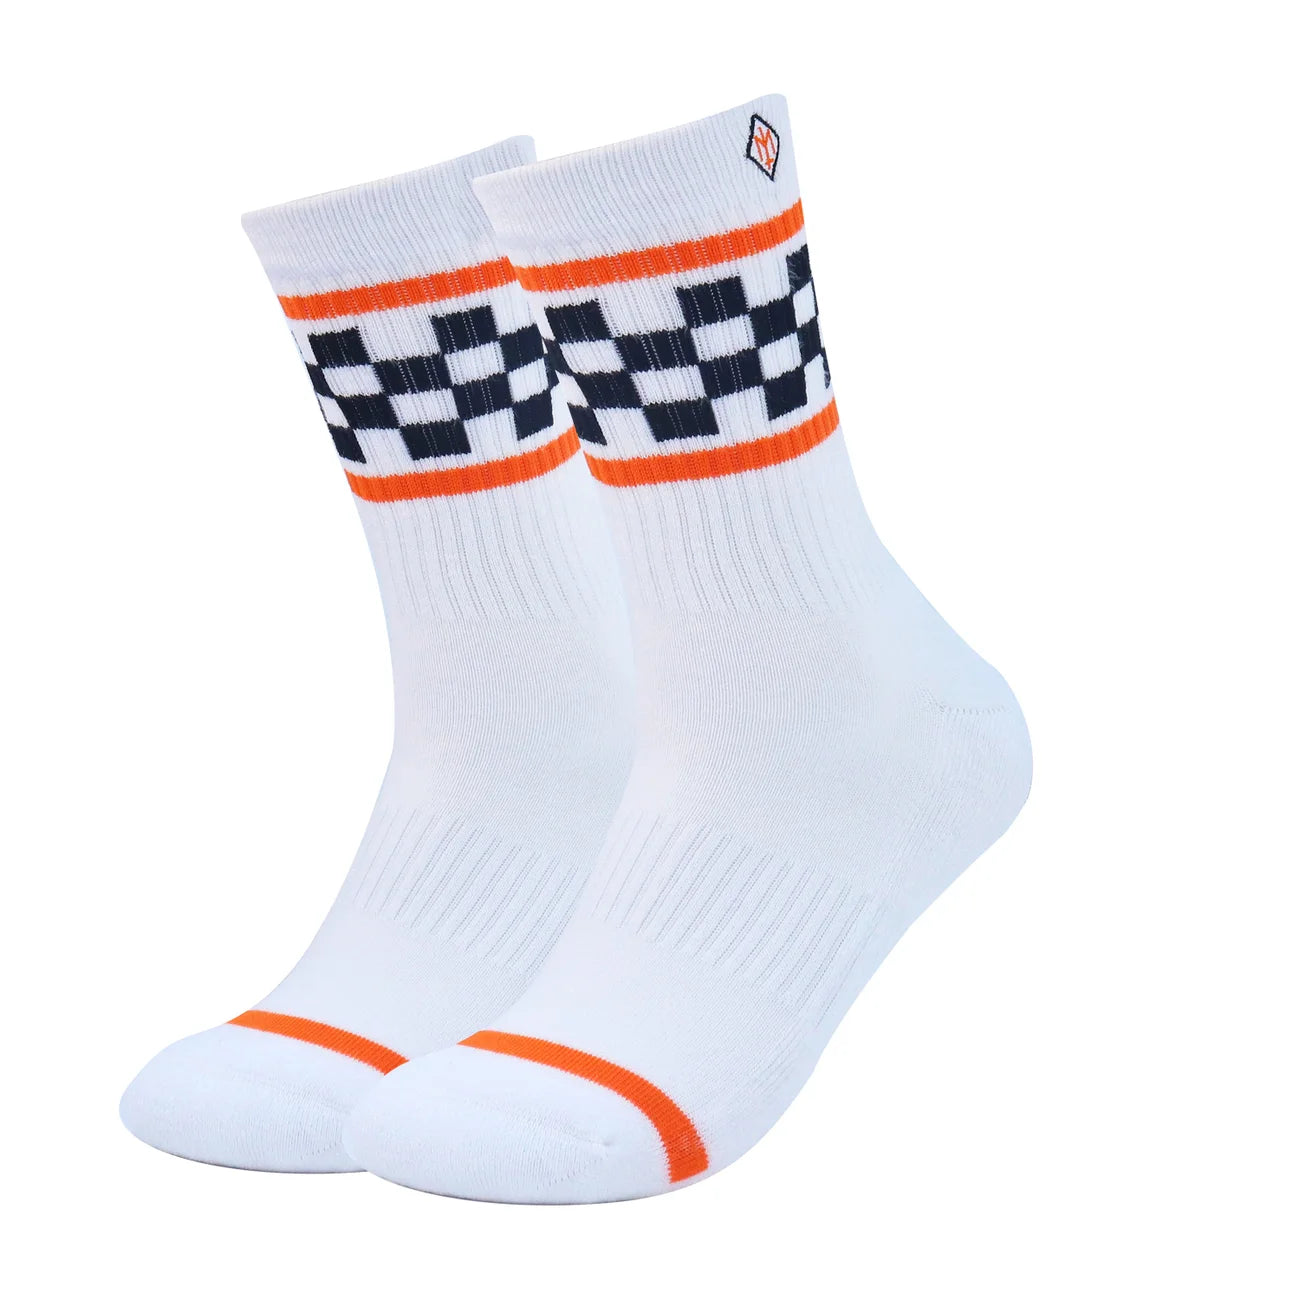 Meraki ‘The Go Fast’ Socks